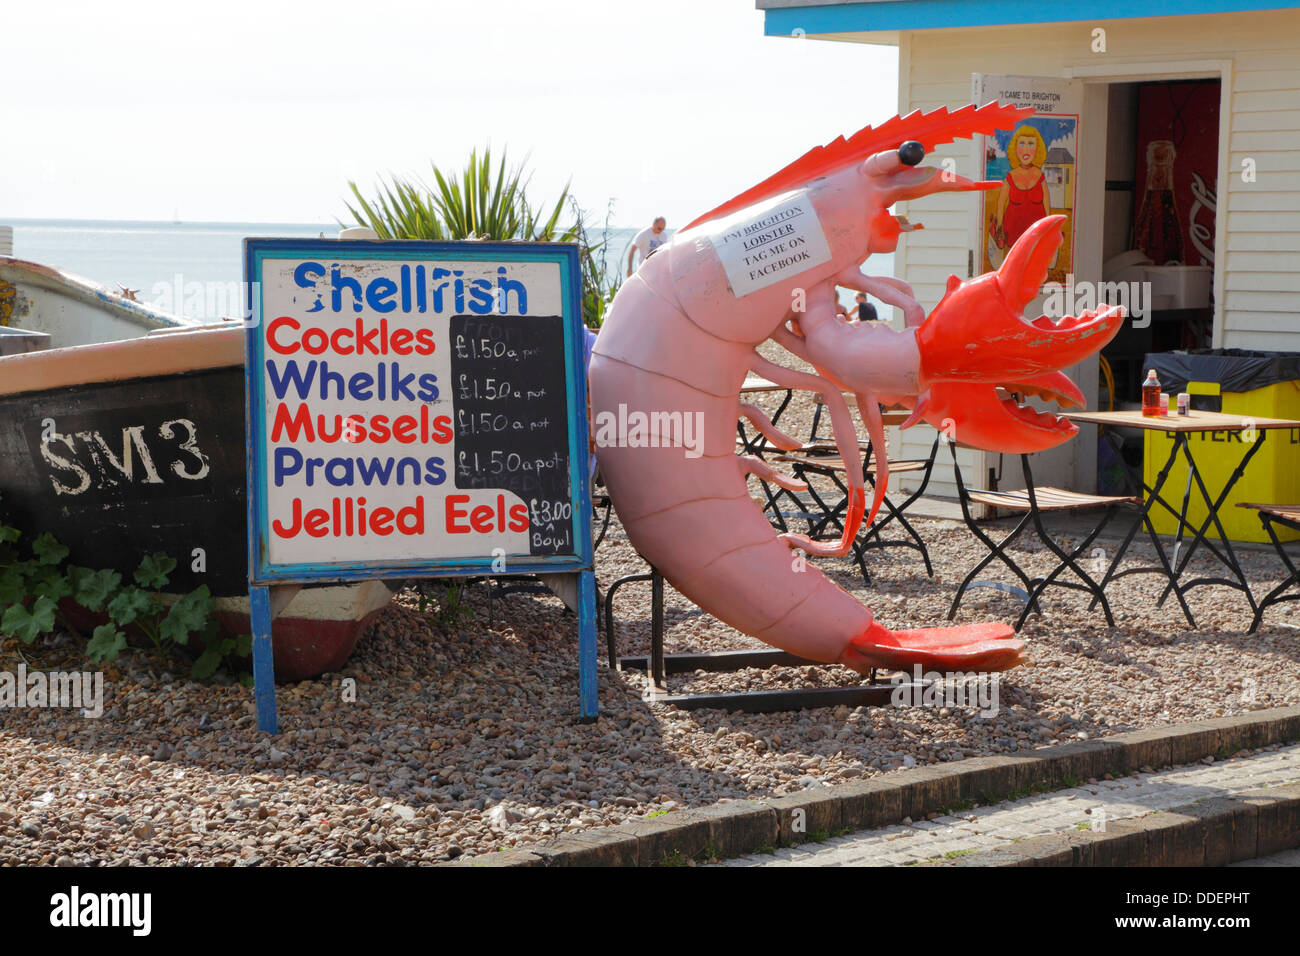 Front de mer de Brighton homard géant affiche à l'extérieur de décrochage des mollusques, East Sussex England UK Banque D'Images